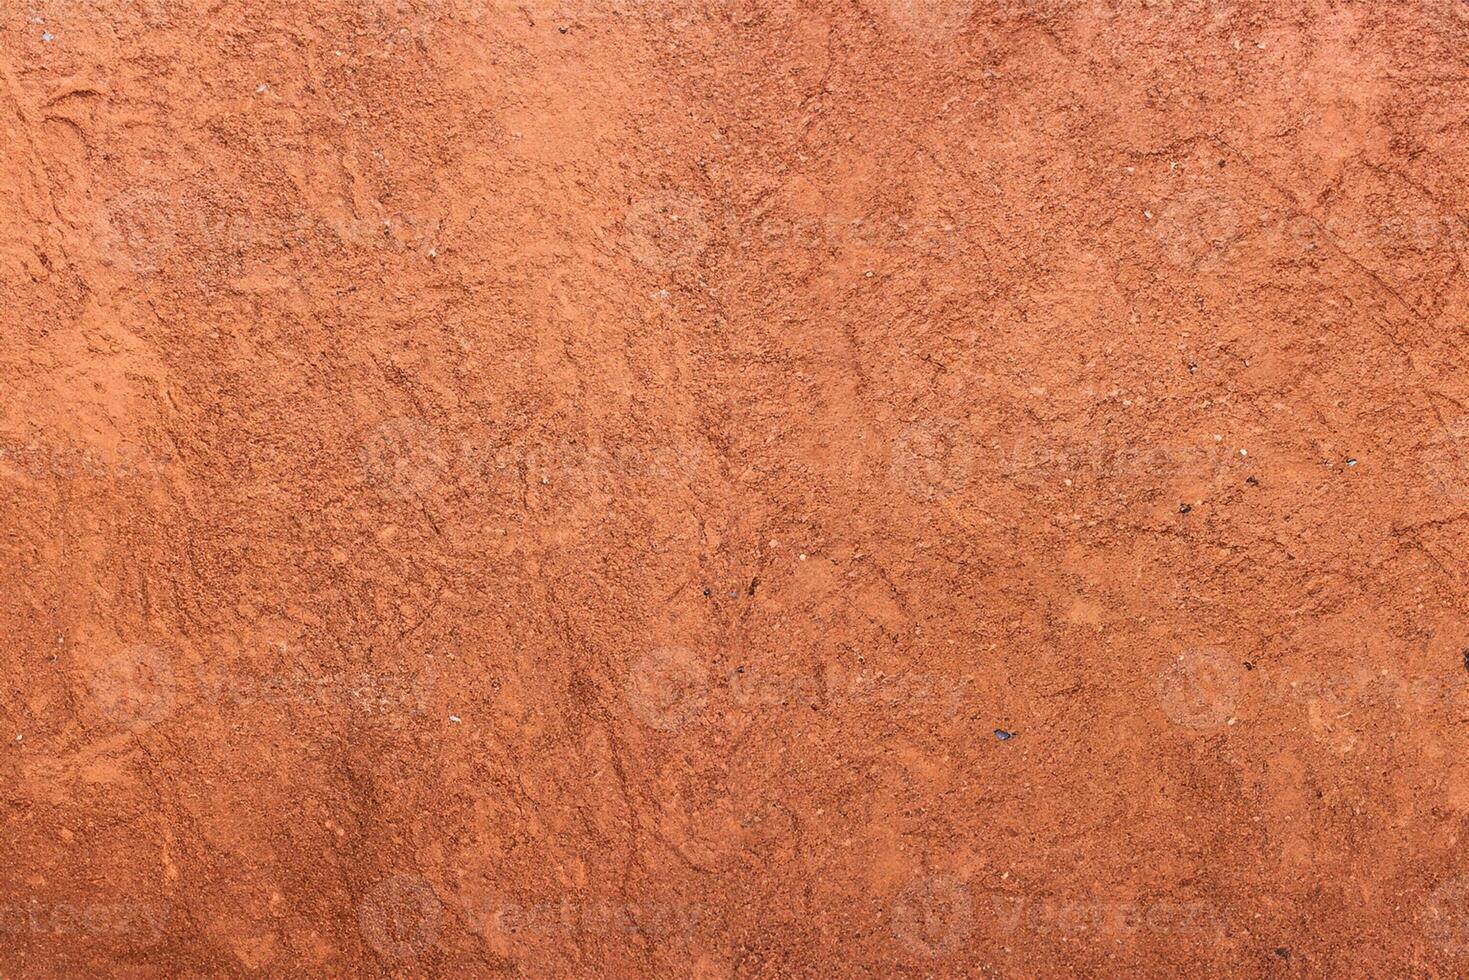 rouge le sable texture avec chaussure impressions sur Haut photo